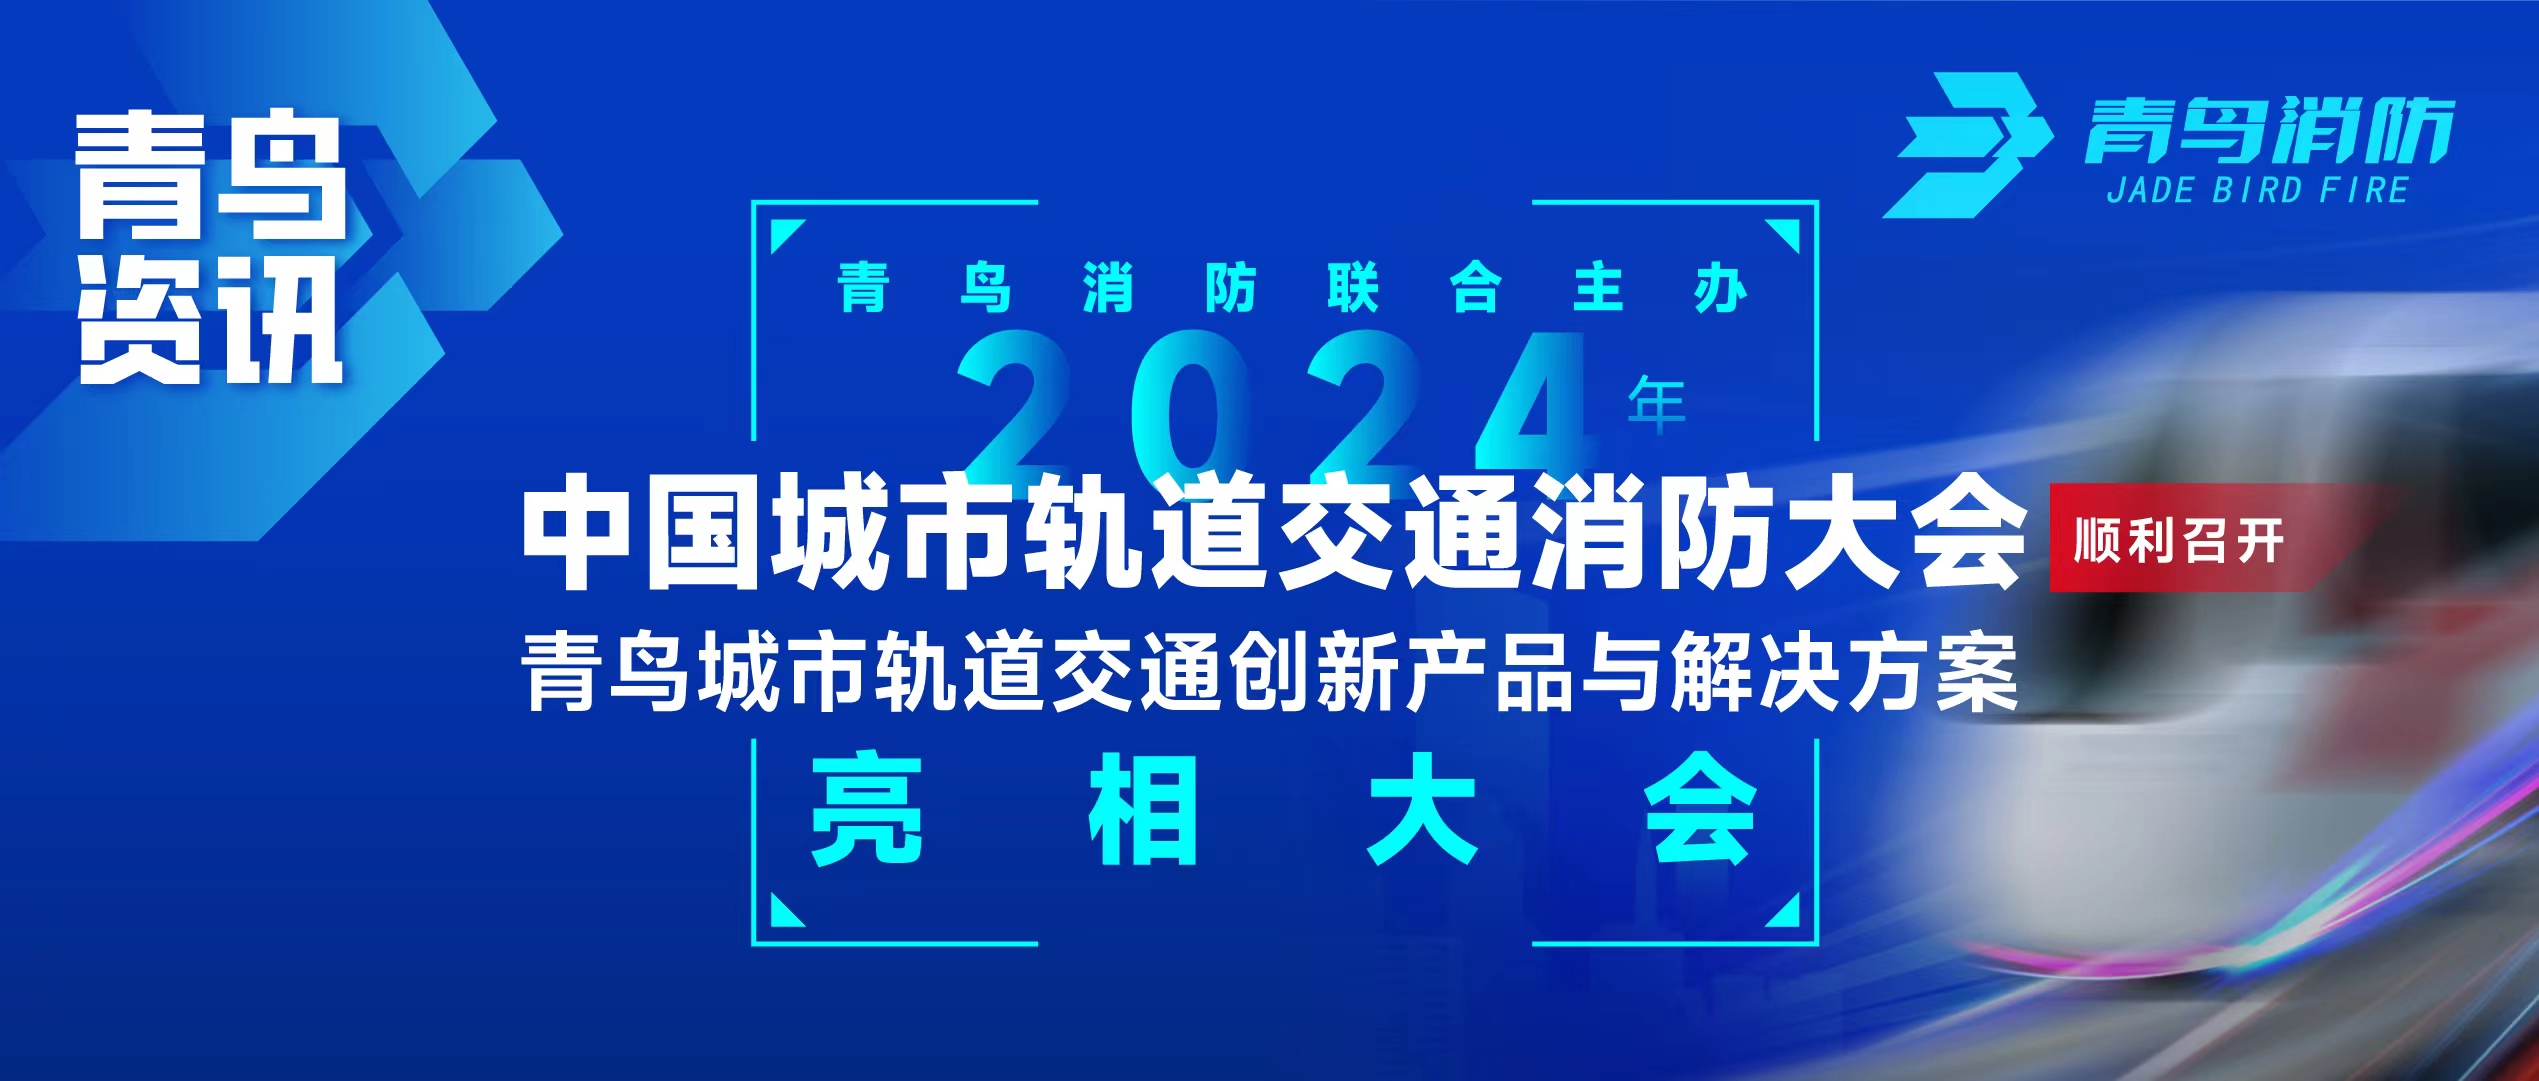 青鸟资讯 | 青鸟消防联合主办2024年中国城市轨道交通消防大会，并发布轨道交通创新产品与解决方案